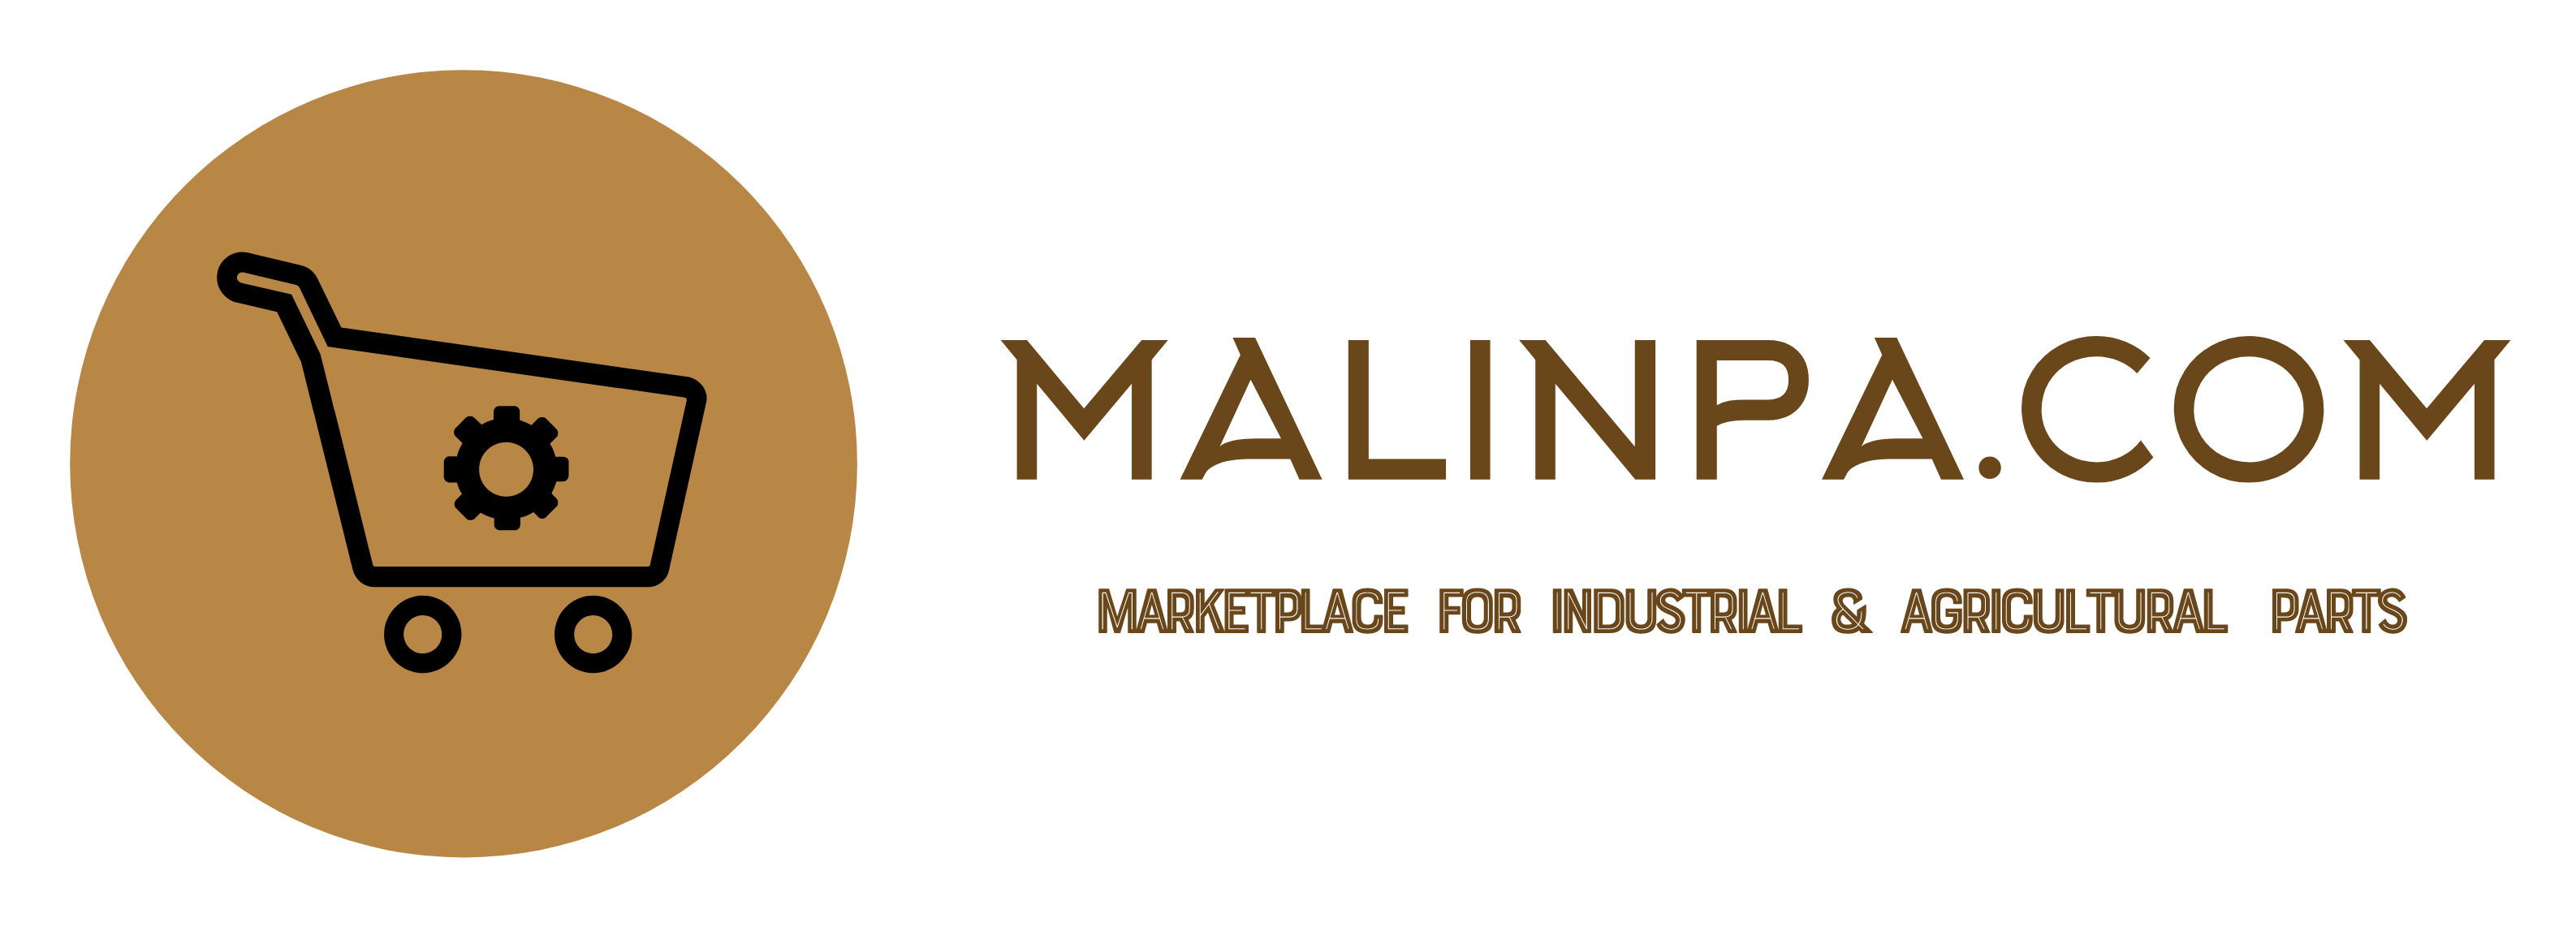 MalinPa.com